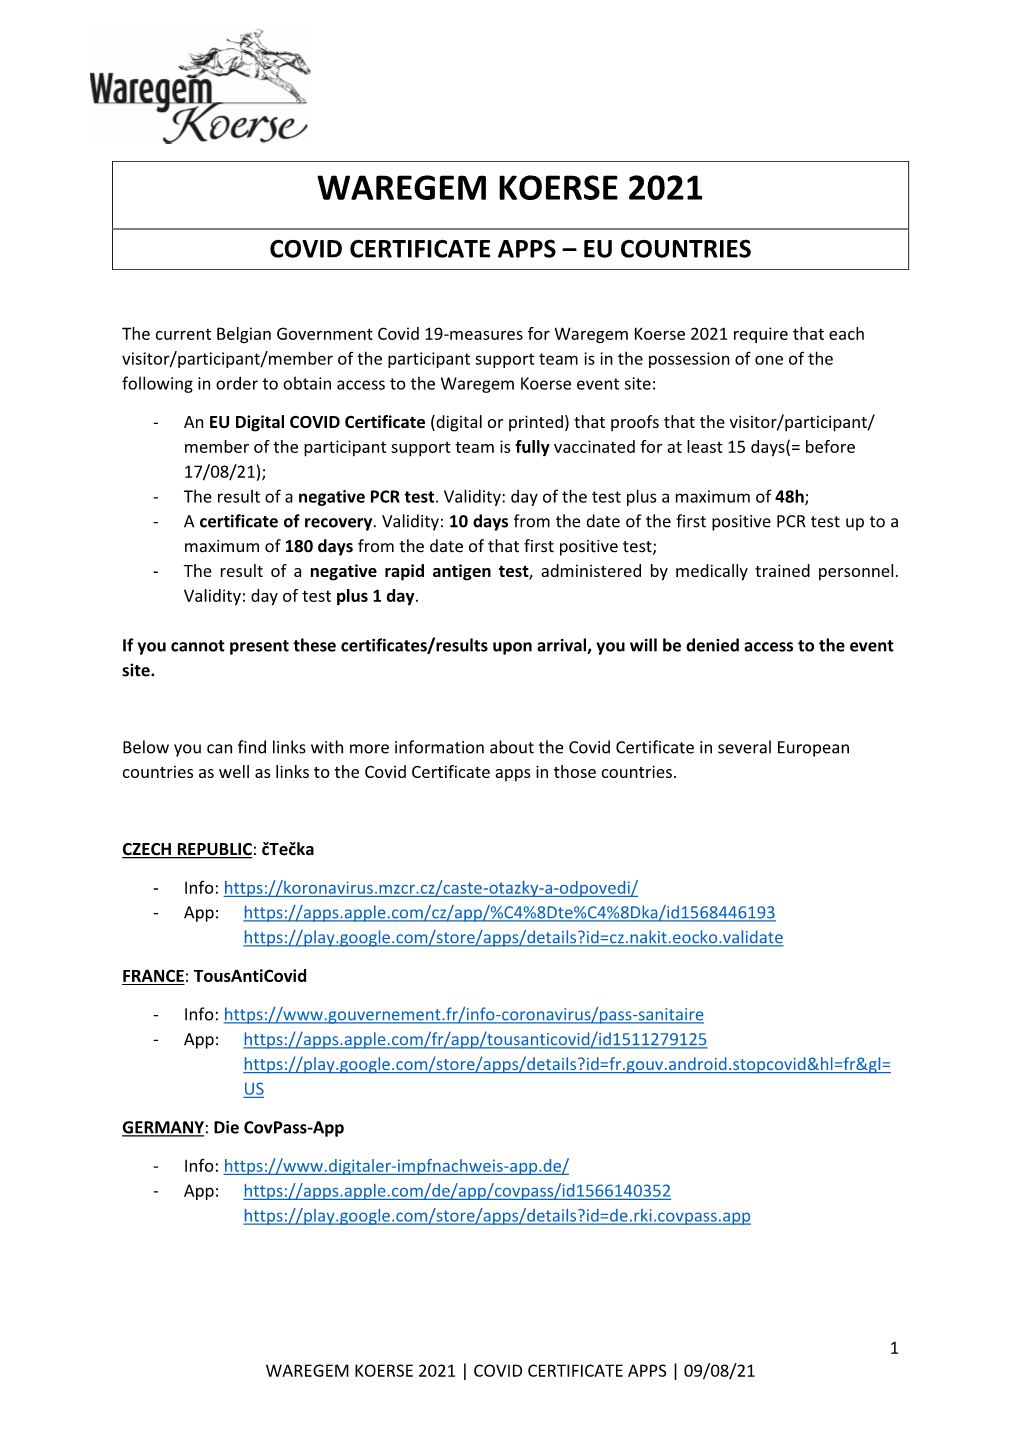 Waregem Koerse 2021 Covid Certificate Apps – Eu Countries